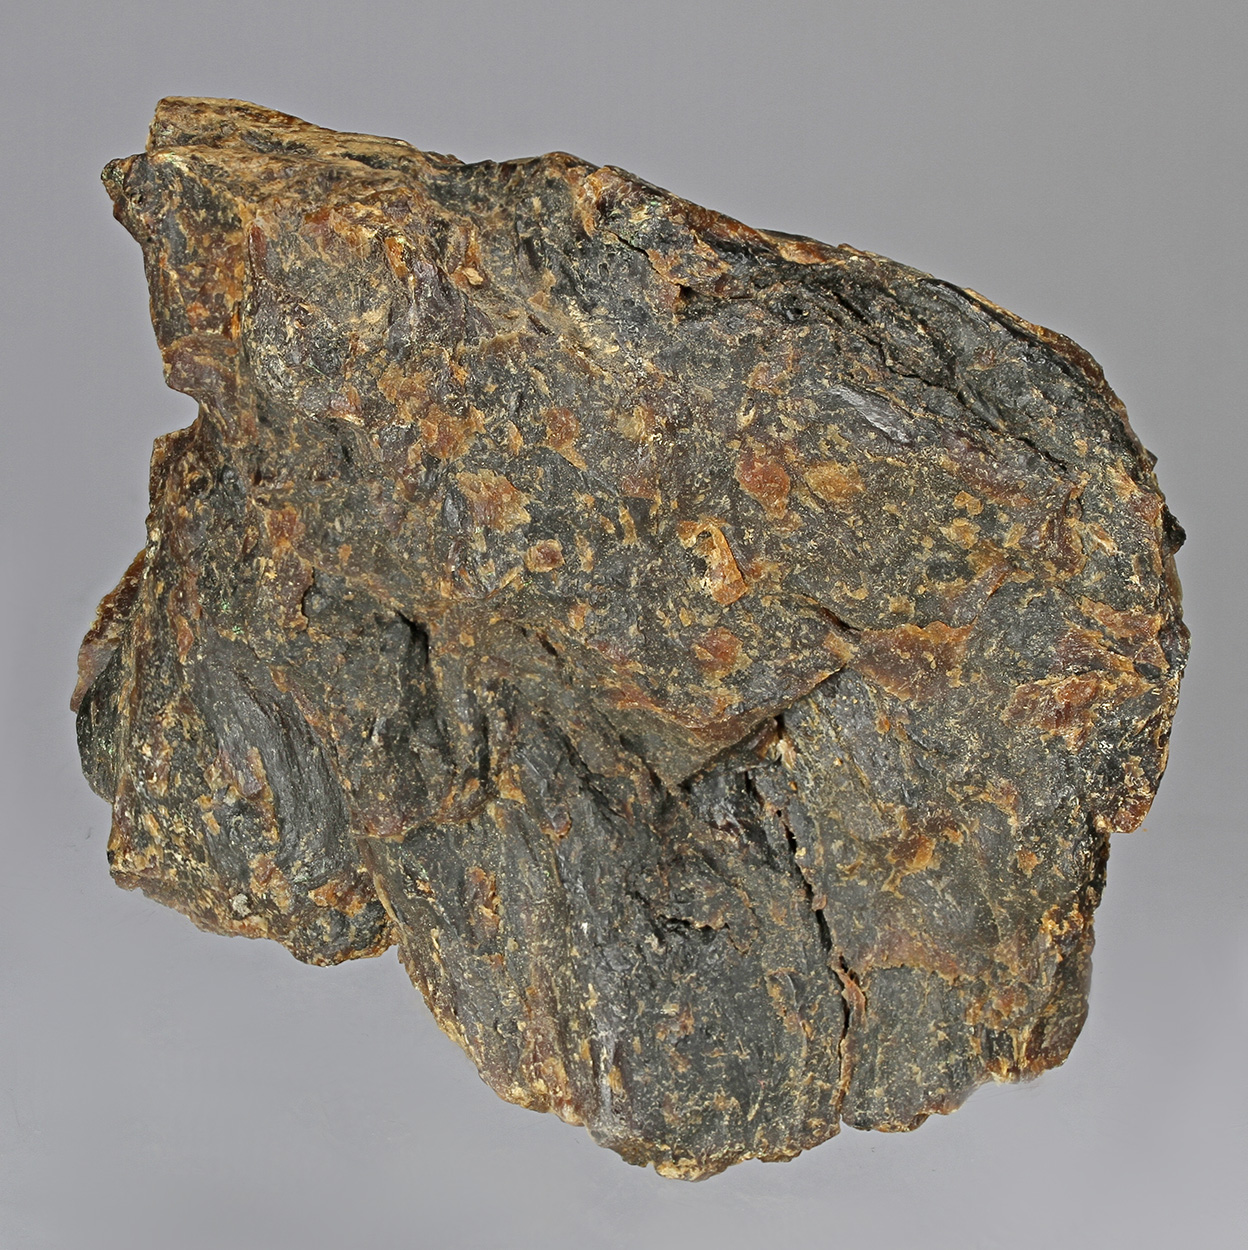 Ozocerite